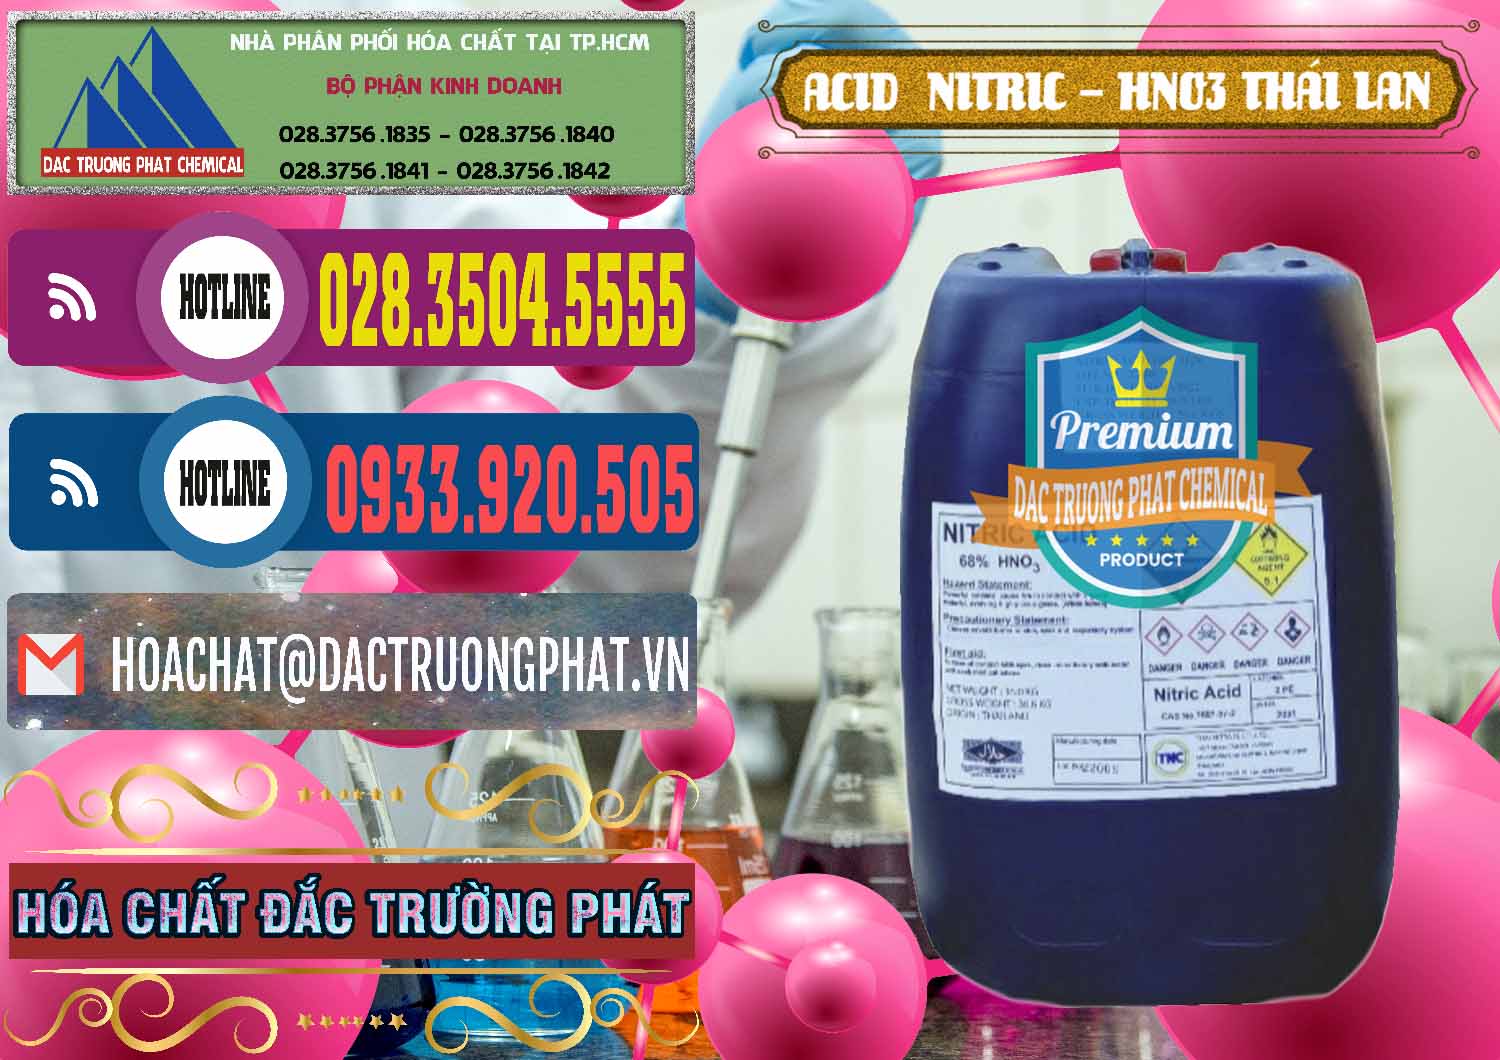 Cty bán _ phân phối Acid Nitric – Axit Nitric HNO3 Thái Lan Thailand - 0344 - Cty chuyên kinh doanh & phân phối hóa chất tại TP.HCM - muabanhoachat.com.vn